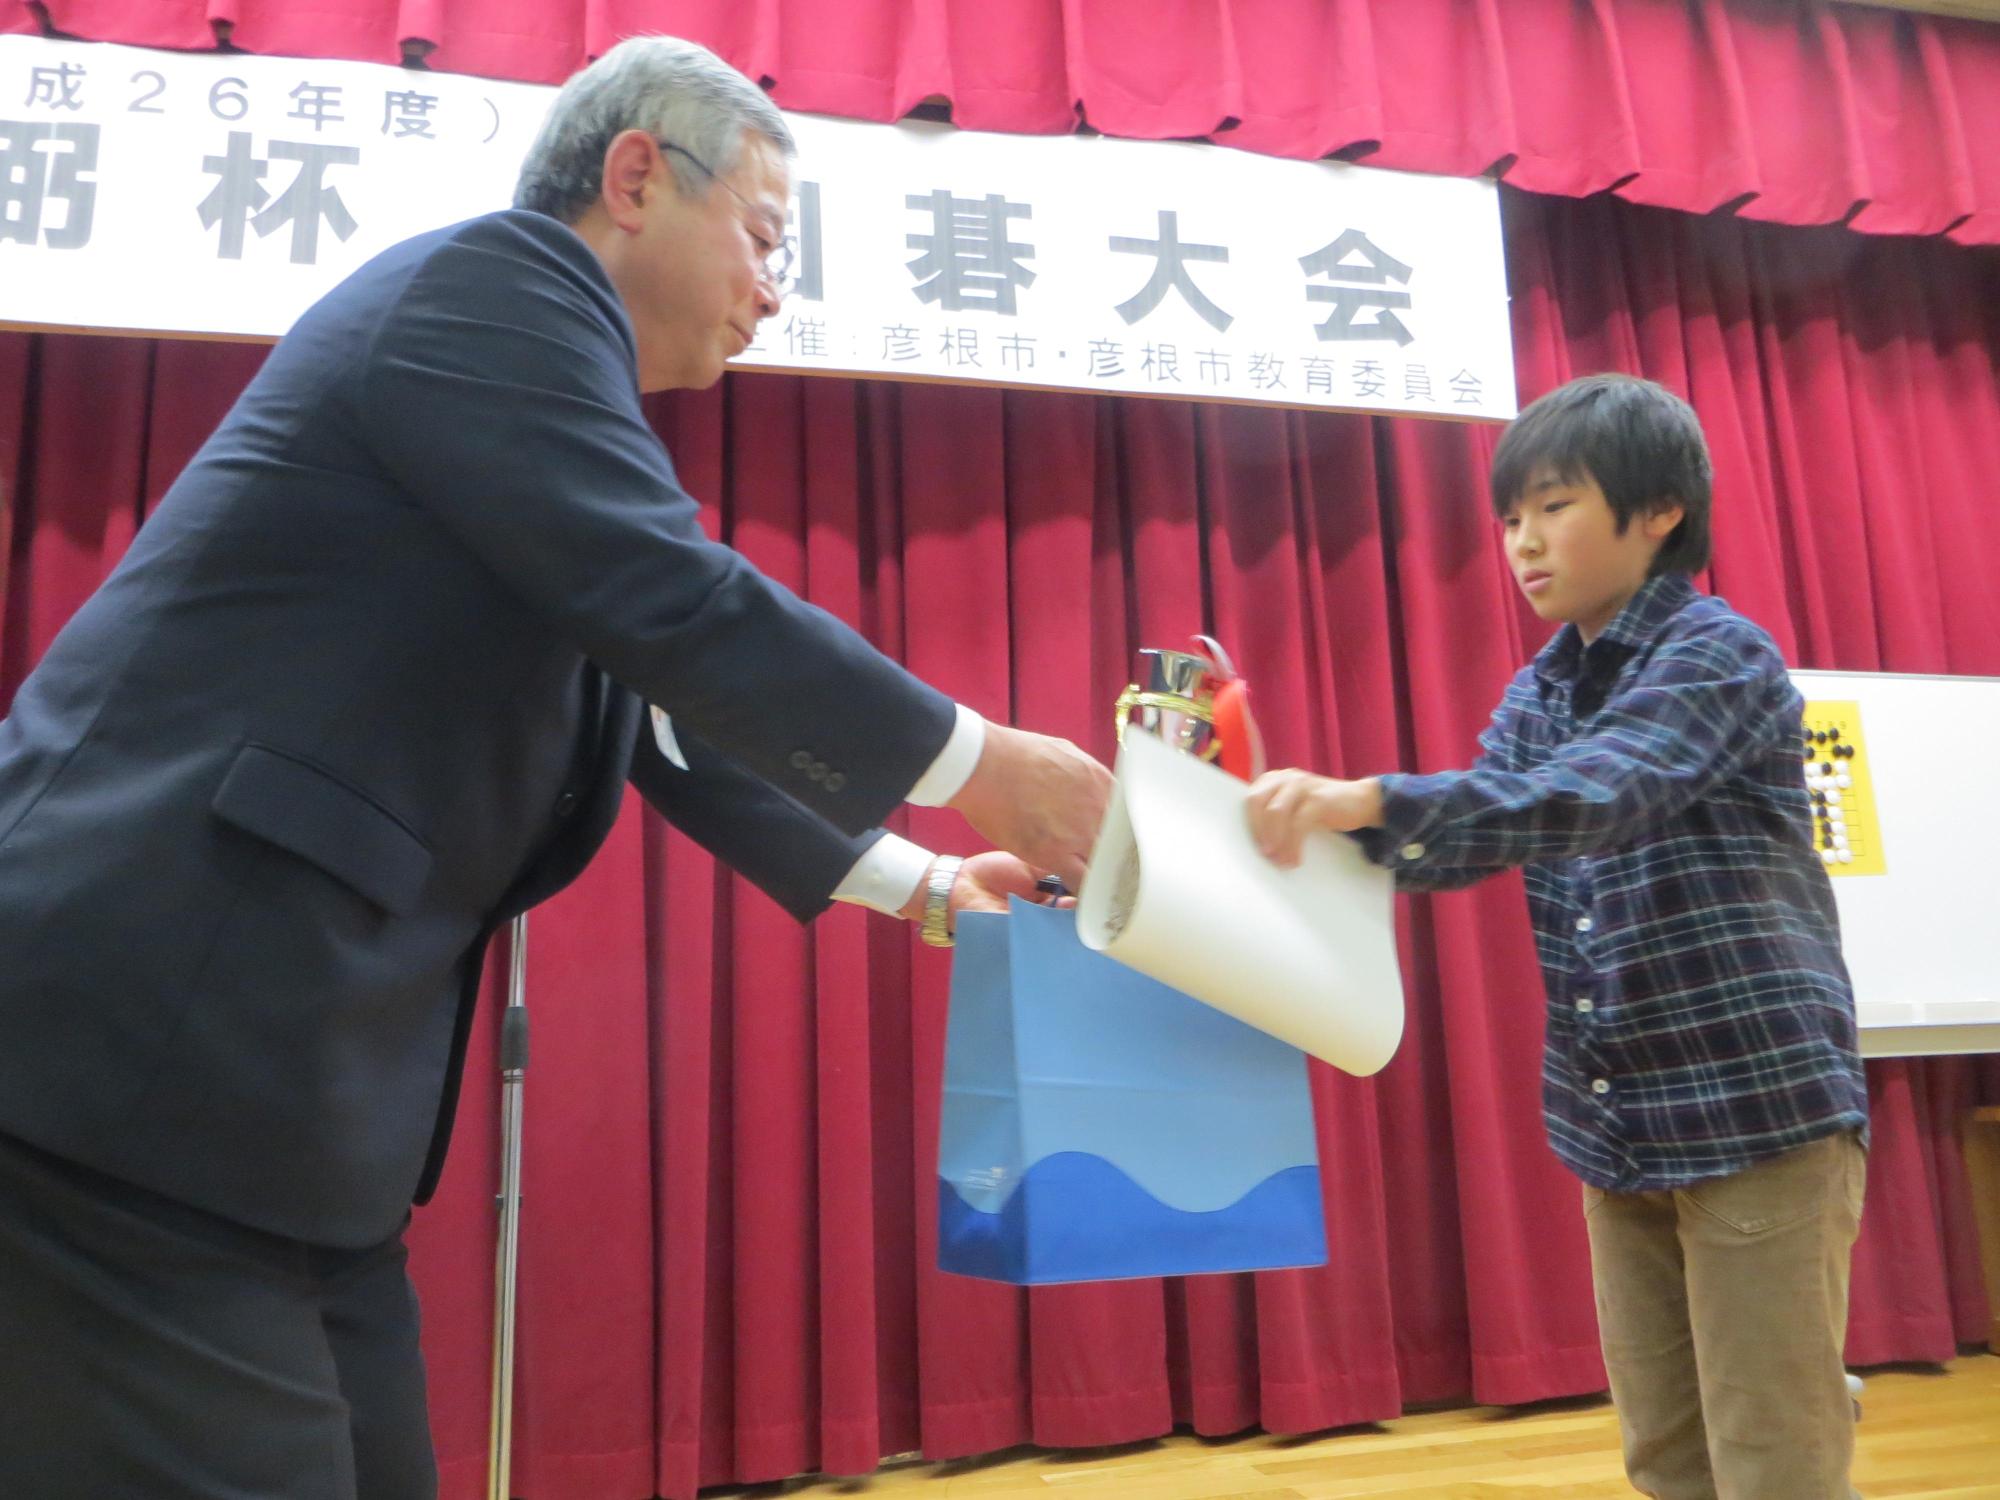 懸賞詰碁で当選者の男児に商品を手渡している様子の写真